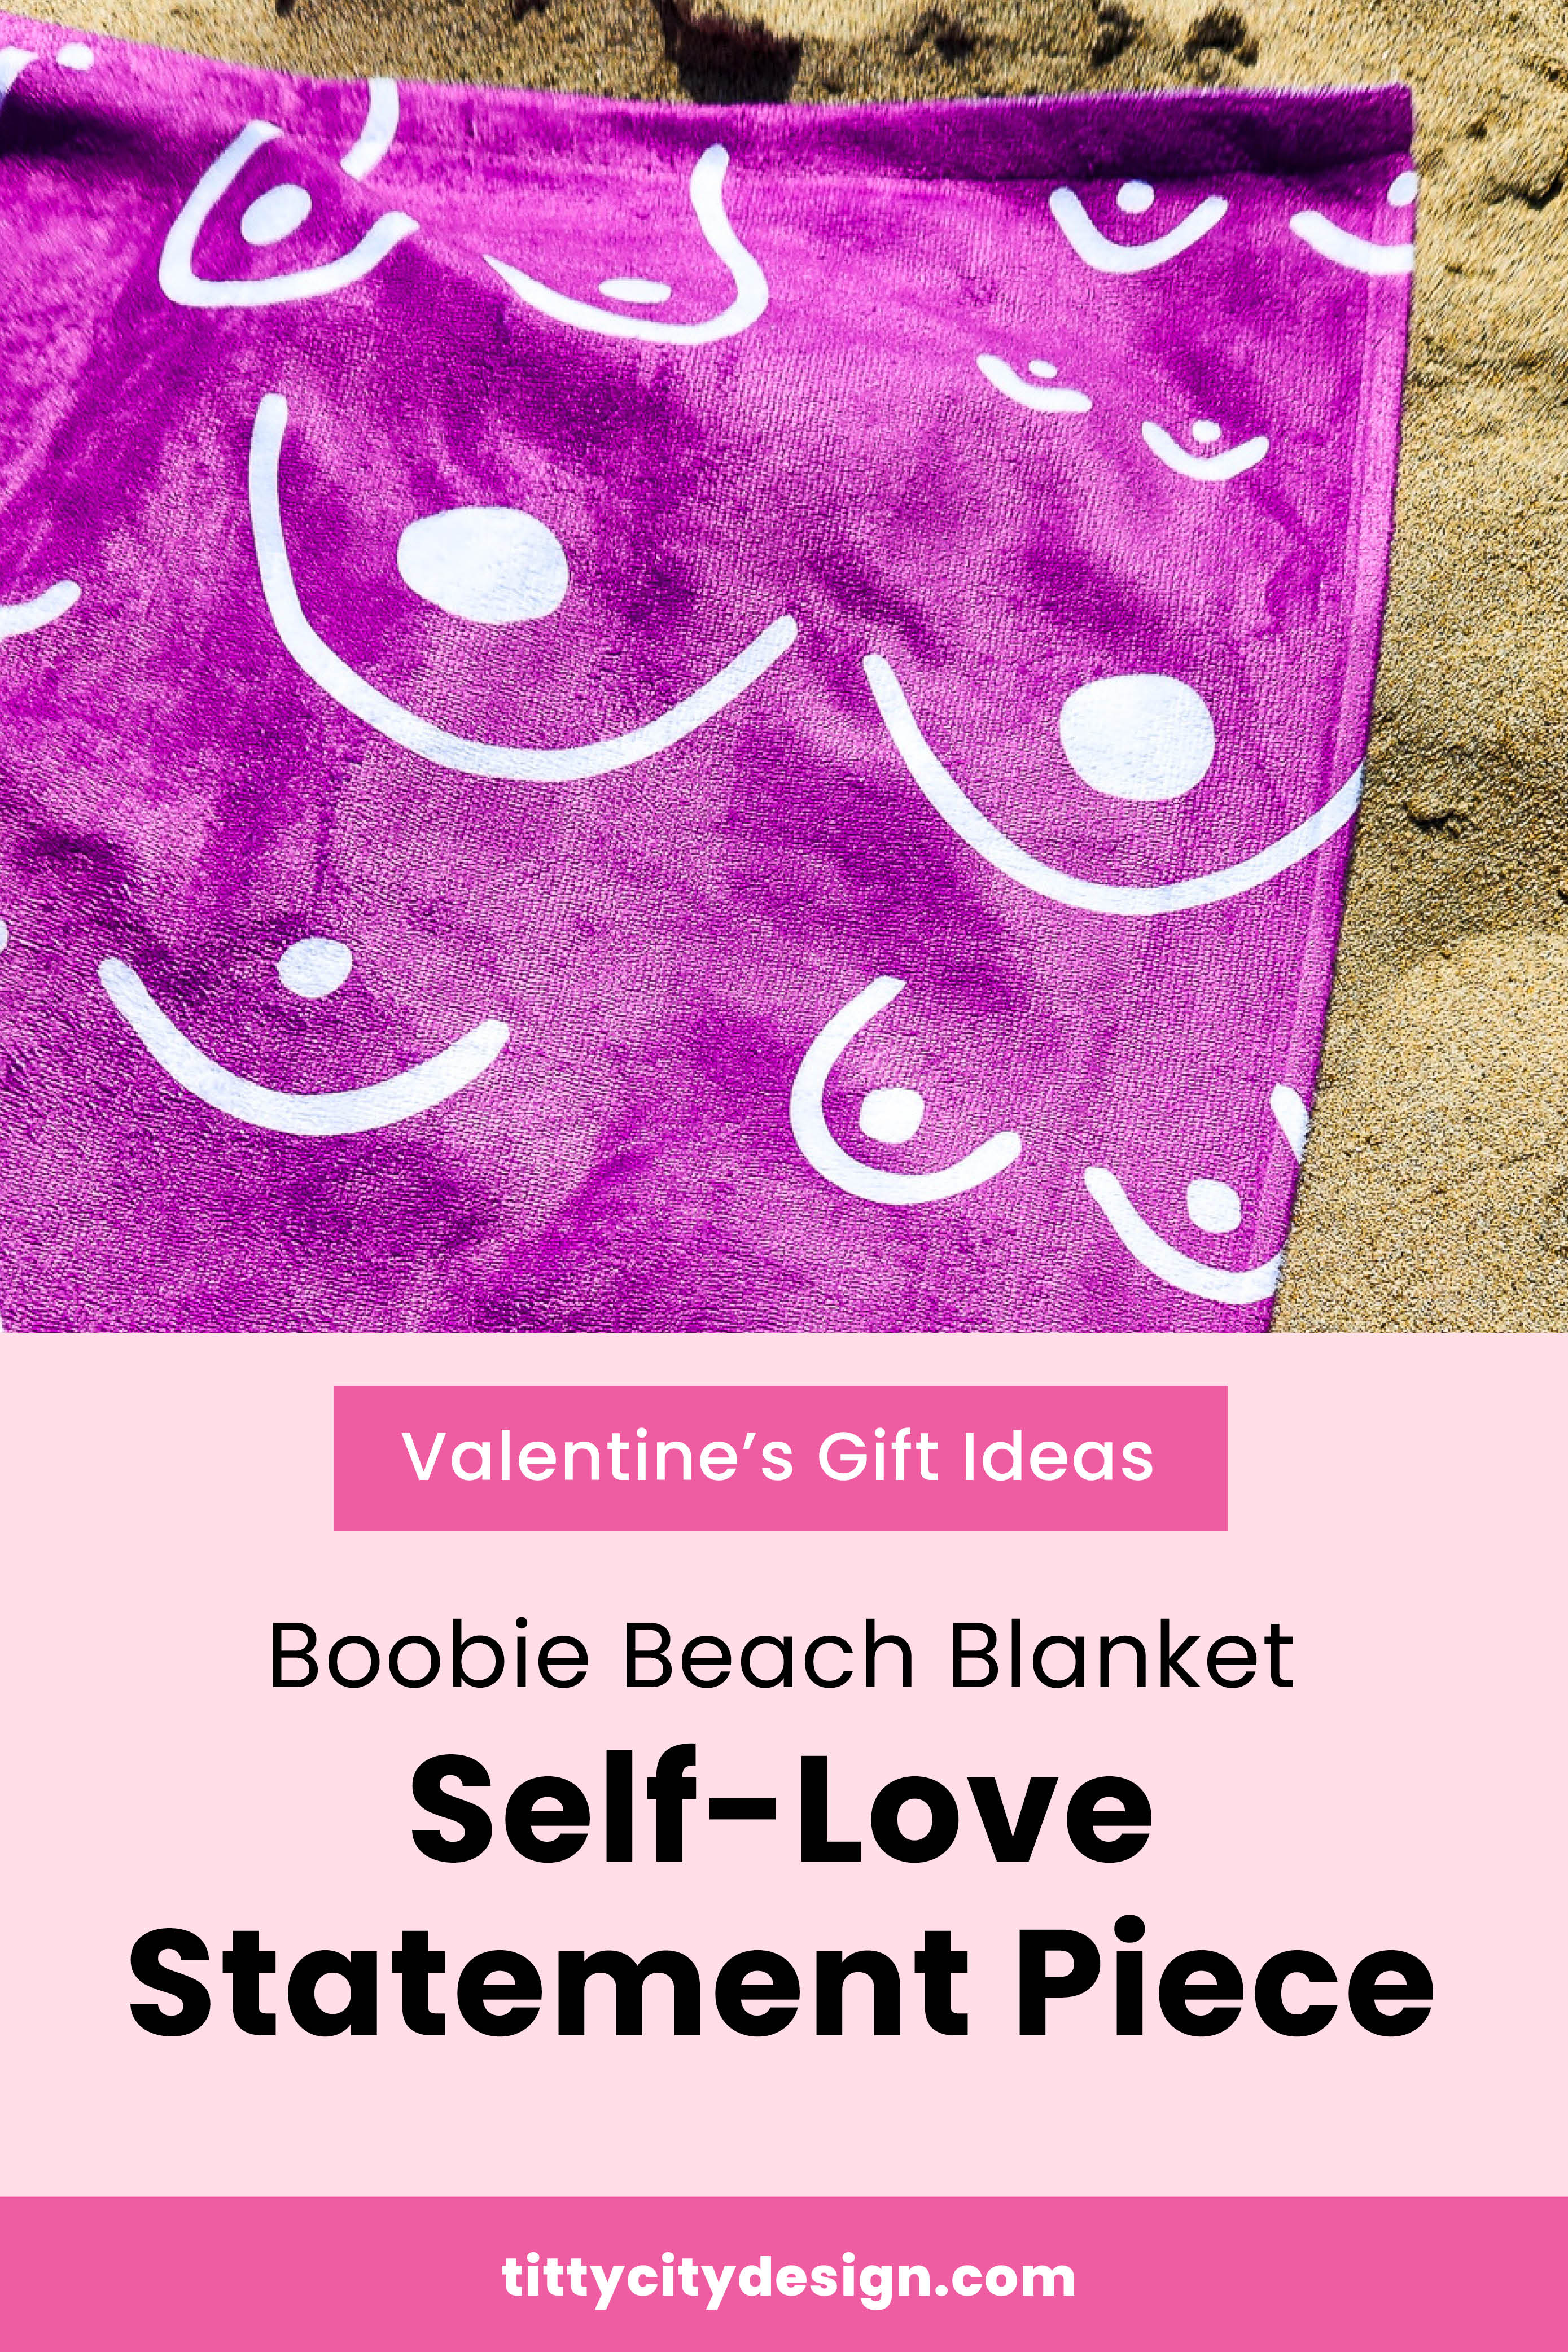 Valentines Gift Ideas - Pink Boobie Beach Towel Blanket "Self Love Statement Piece"